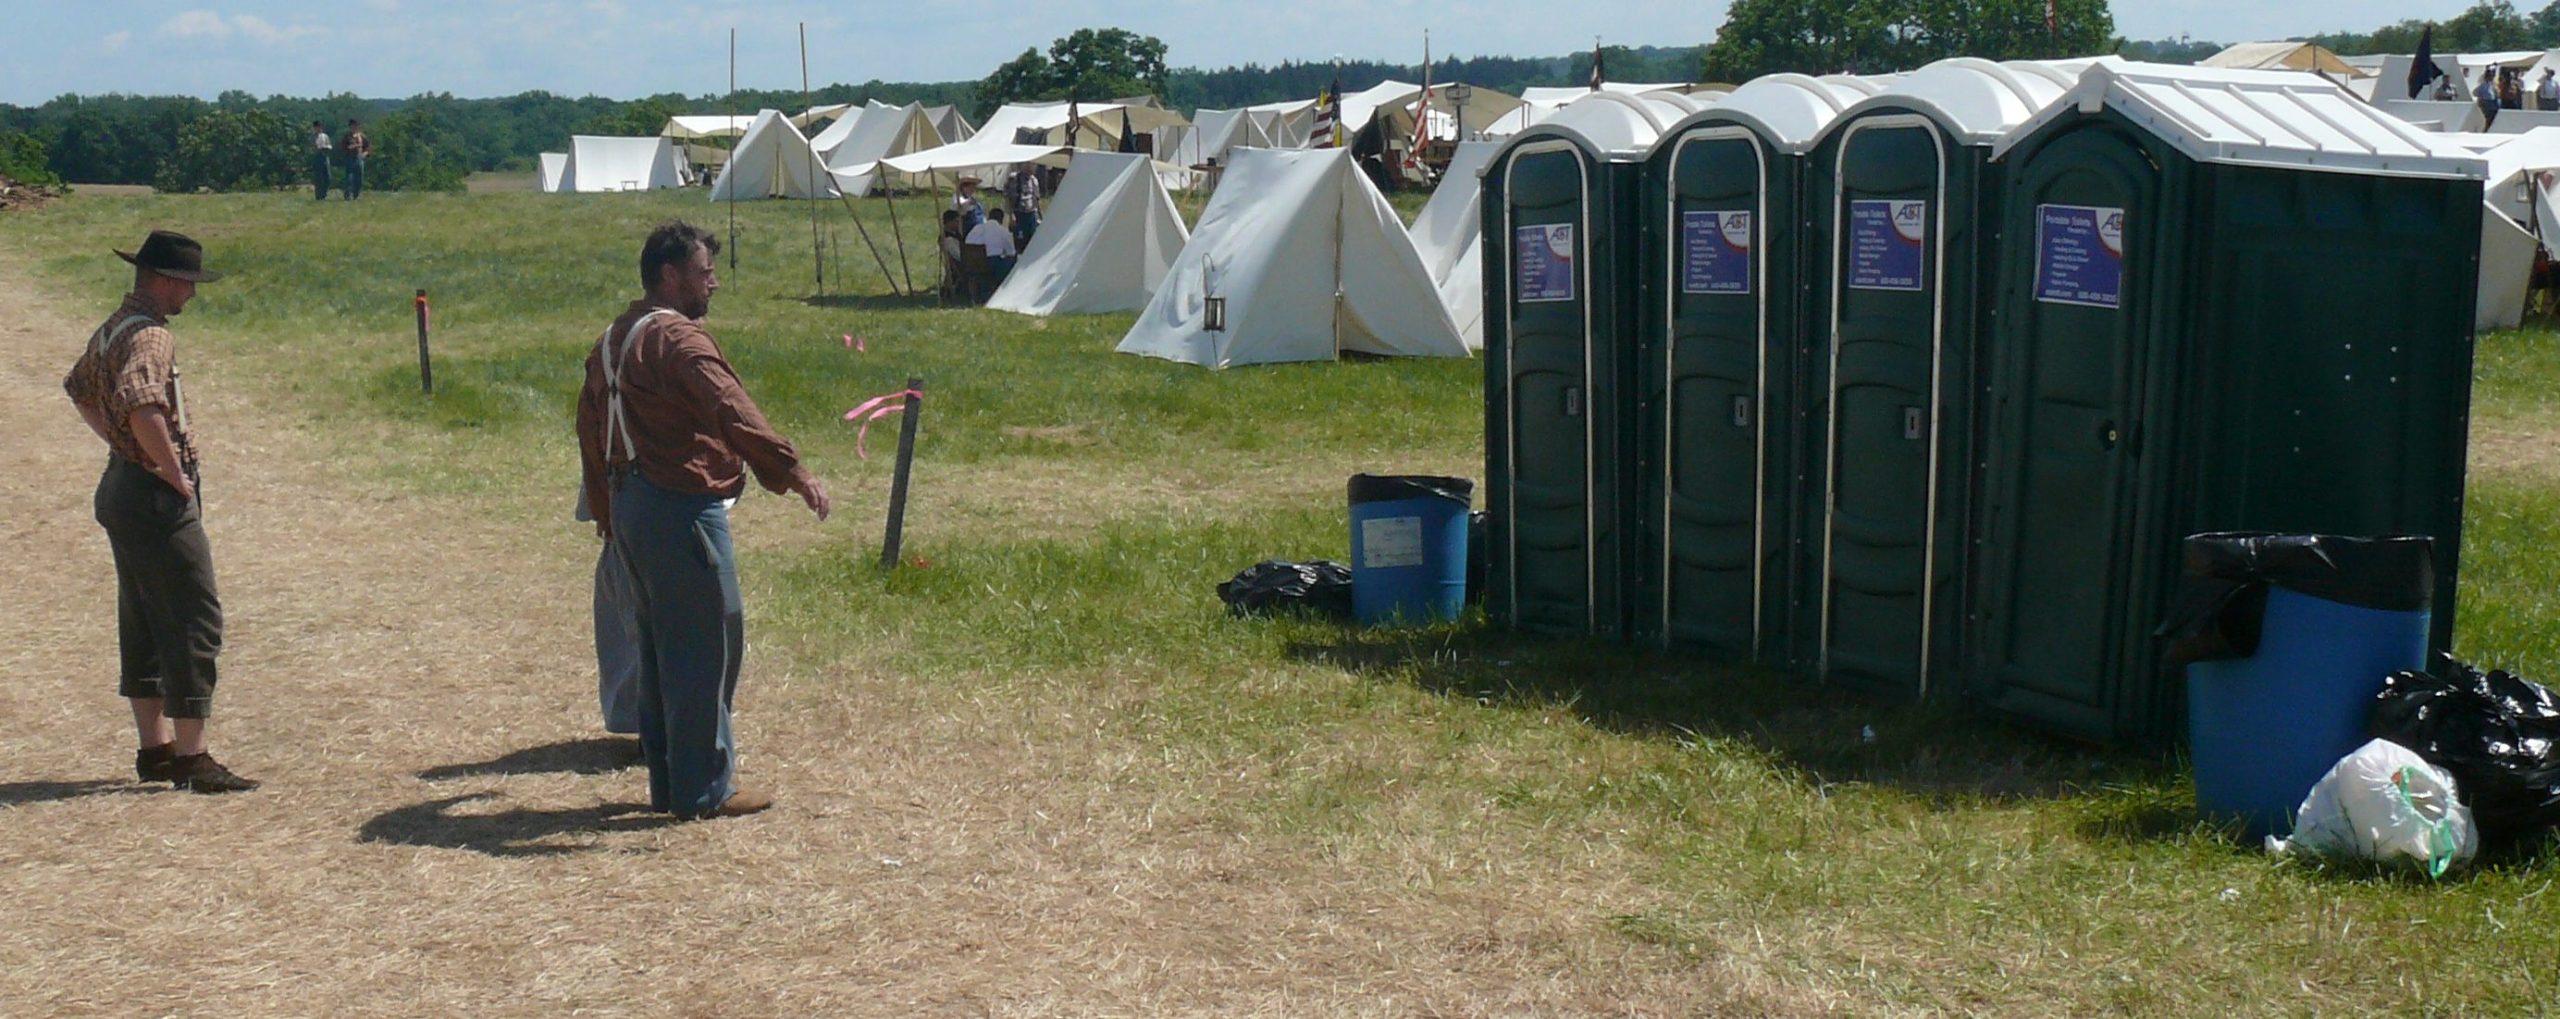 Ein paar in Uniformen des US-Bürgerkriegs gekleidete Männer stehen im Zeltlager vor einer Reihe Dixi-Toiletten.